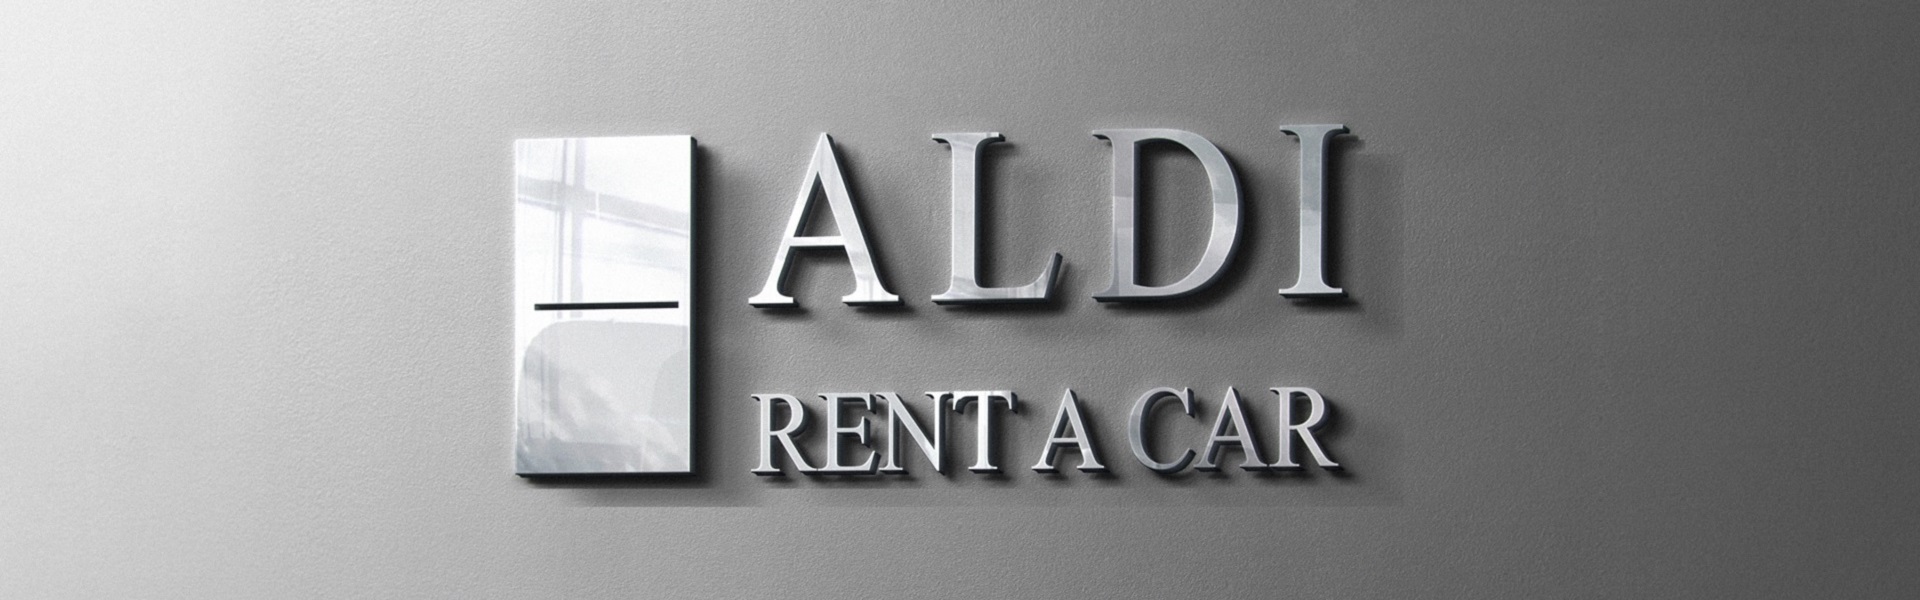 Rent a car Beograd ALDI | Selidbe Beograd